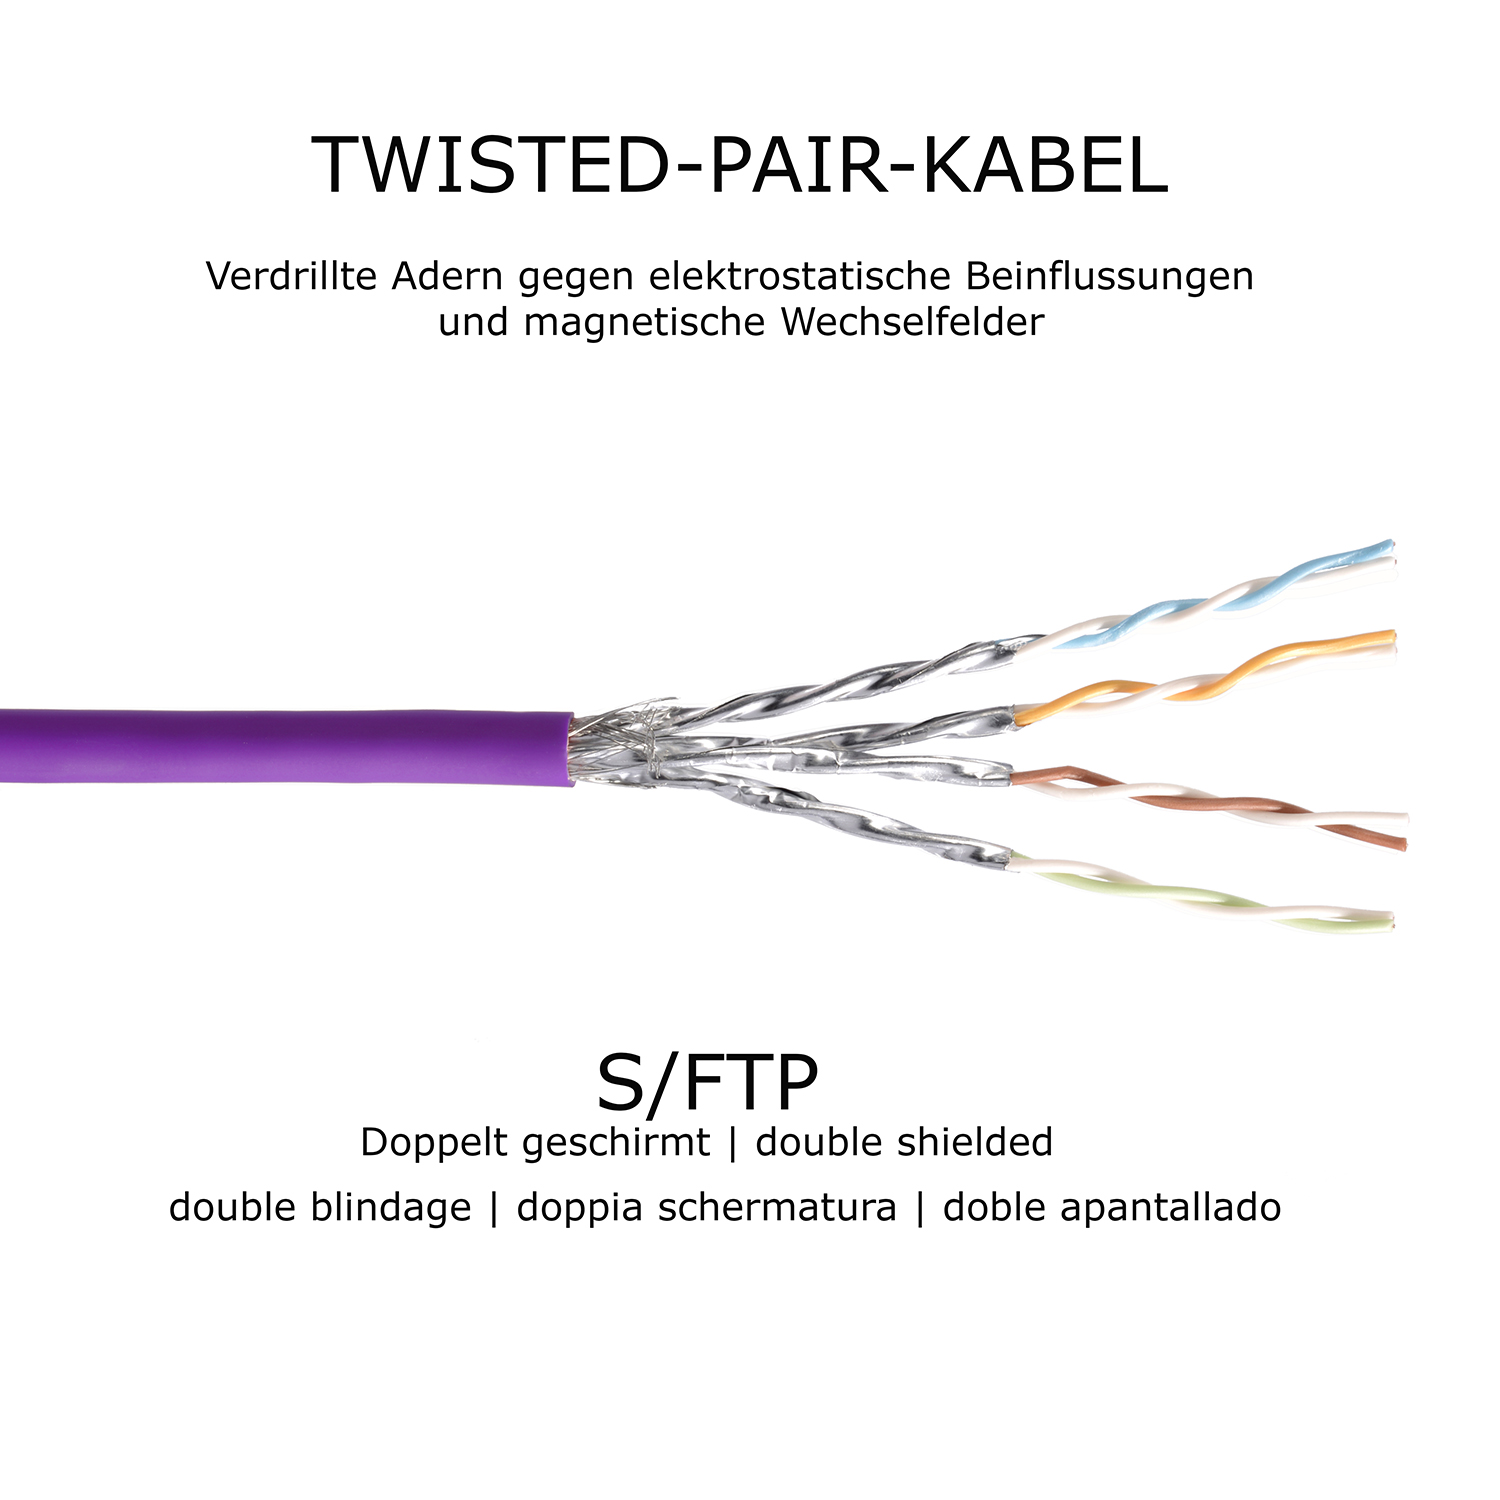 1000Mbit, / S/FTP TPFNET Netzwerkkabel violett, Netzwerkkabel, 20 20m Patchkabel m